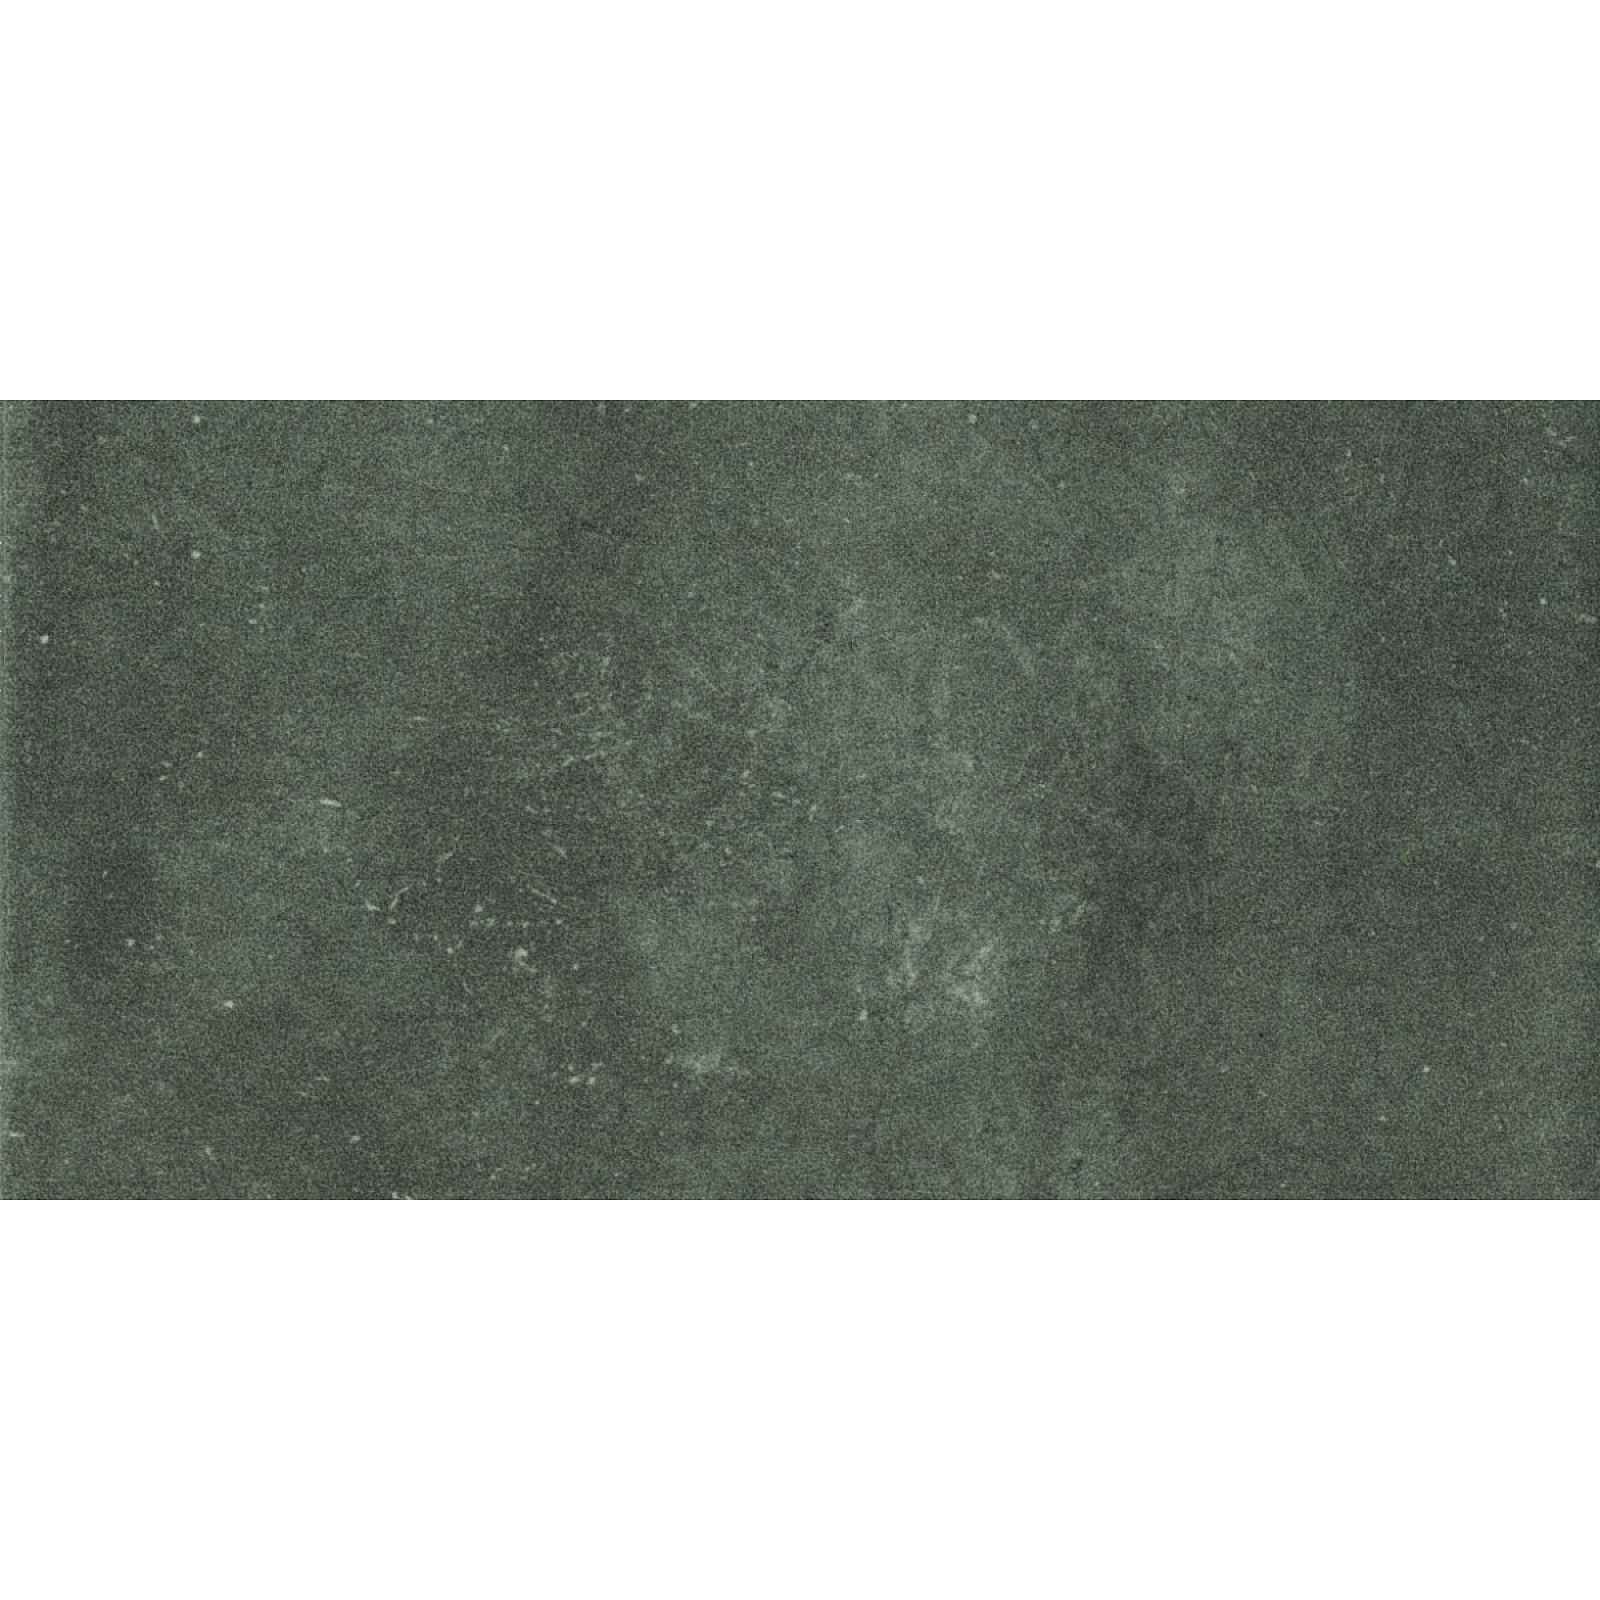 Obklad Cir Materia Prima hunter green 10x20 cm lesk 1069760